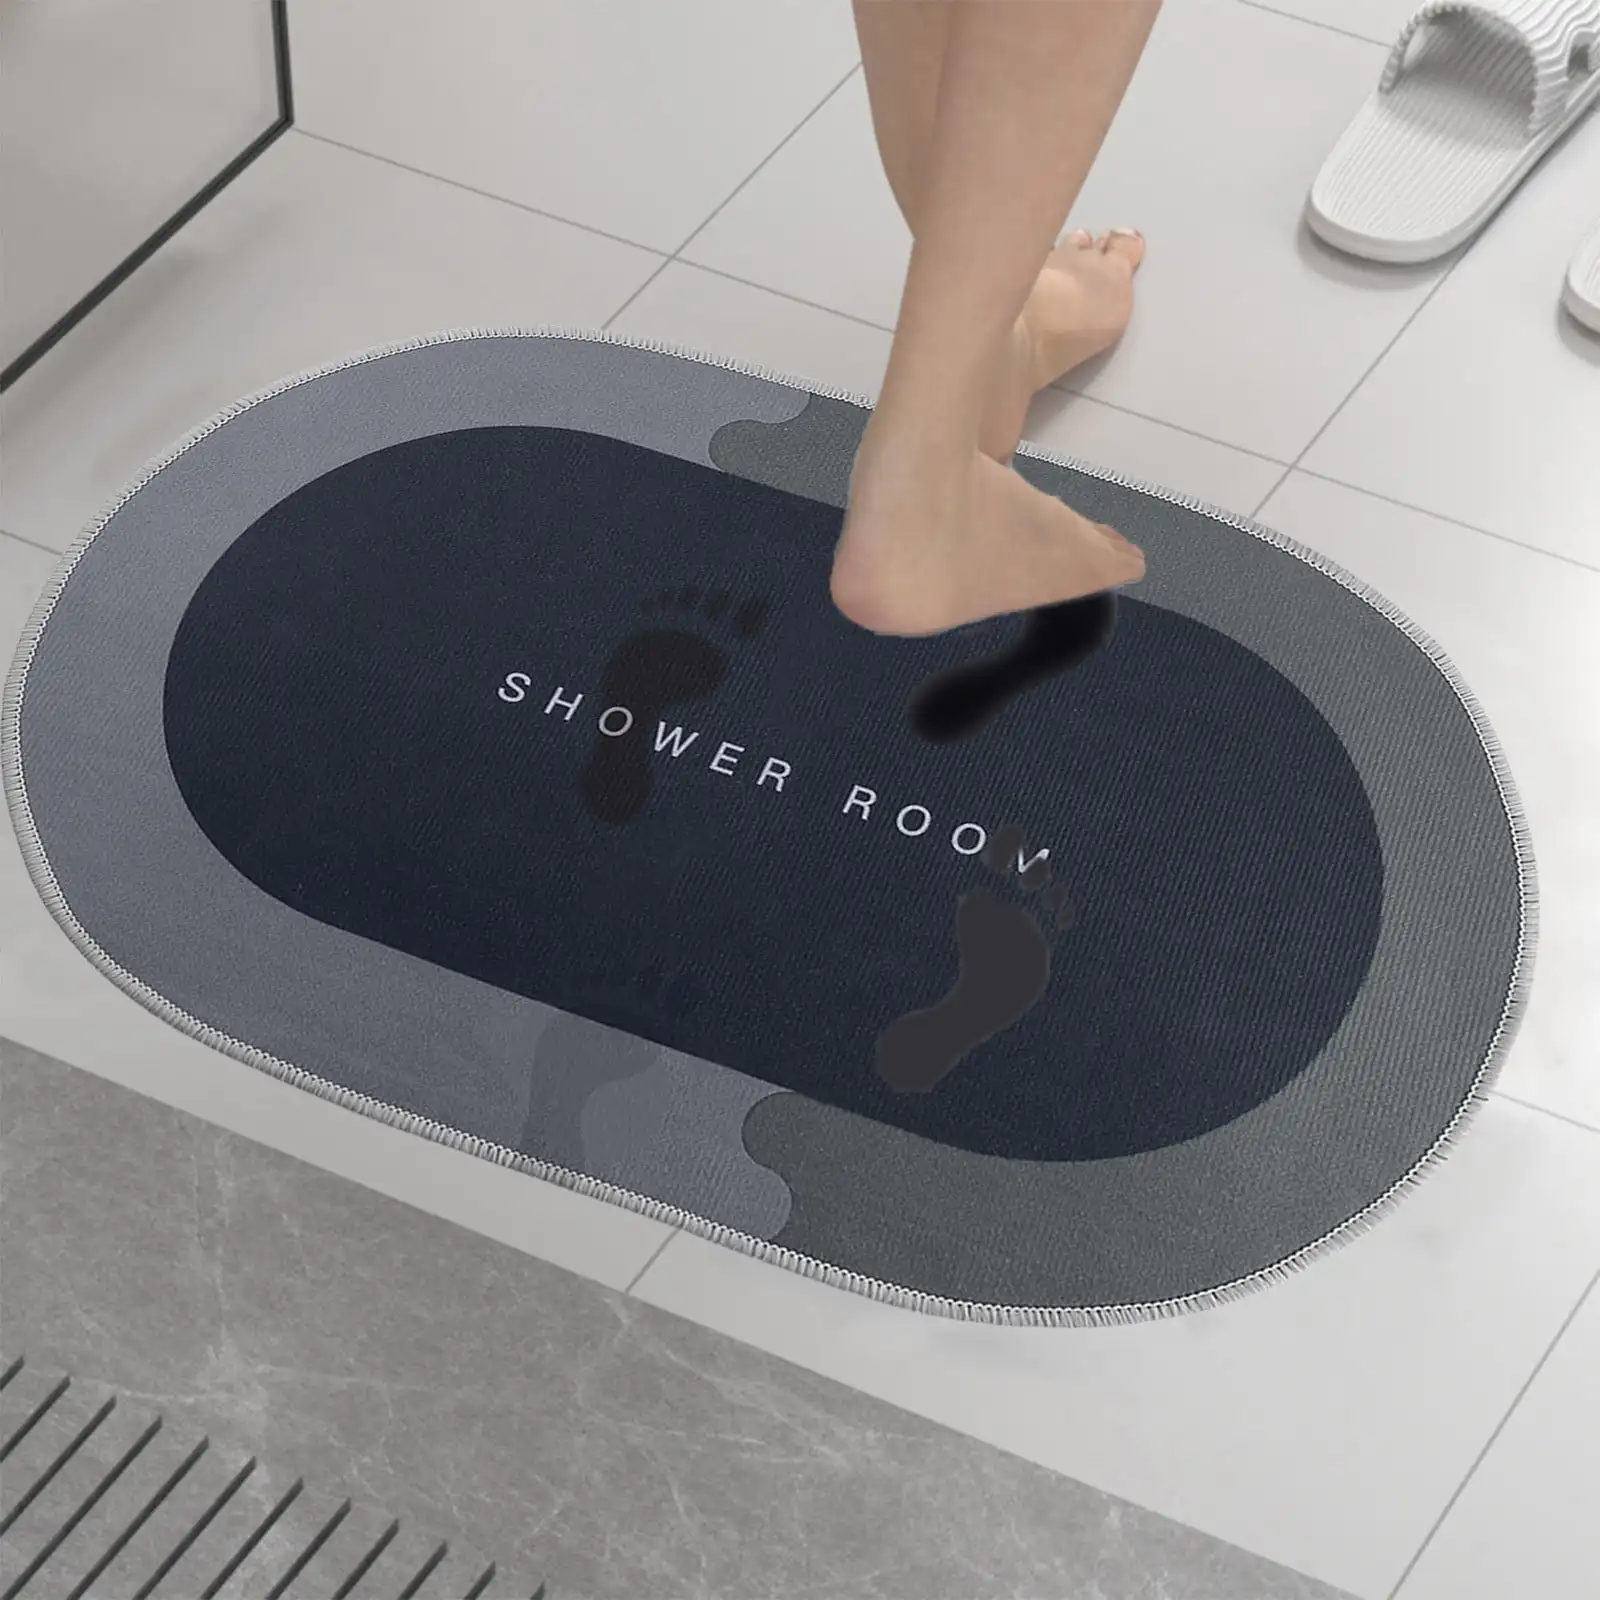 

BGZLEU Bath Rug - Super Absorbent Bathroom Floor Mats, Shower Rug for in Front of Bathtub, Shower Room (16x24in) (Black)